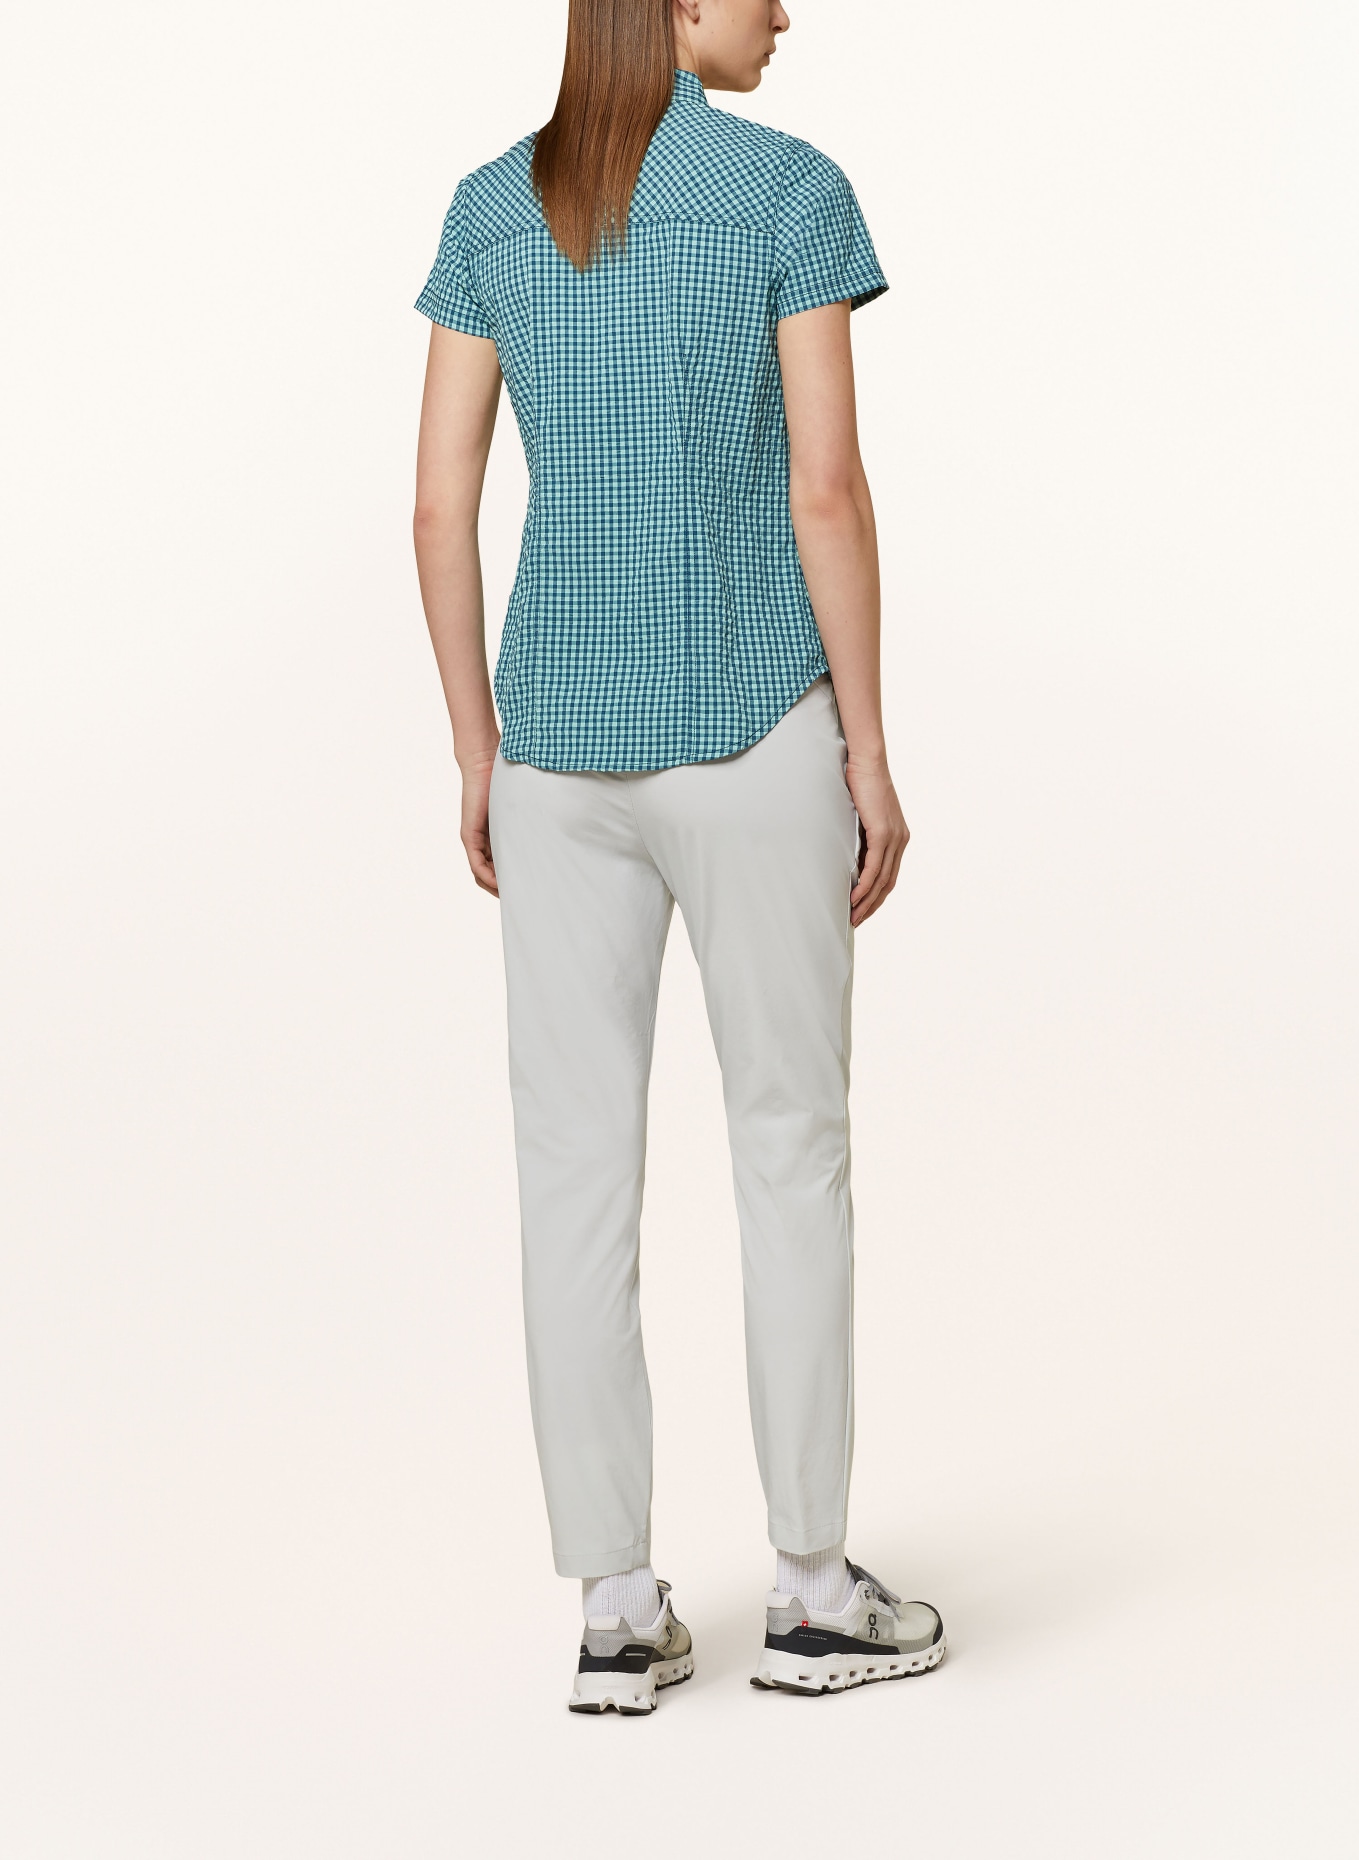 me°ru' Outdoor blouse OTTA, Color: MINT/ BLUE (Image 3)